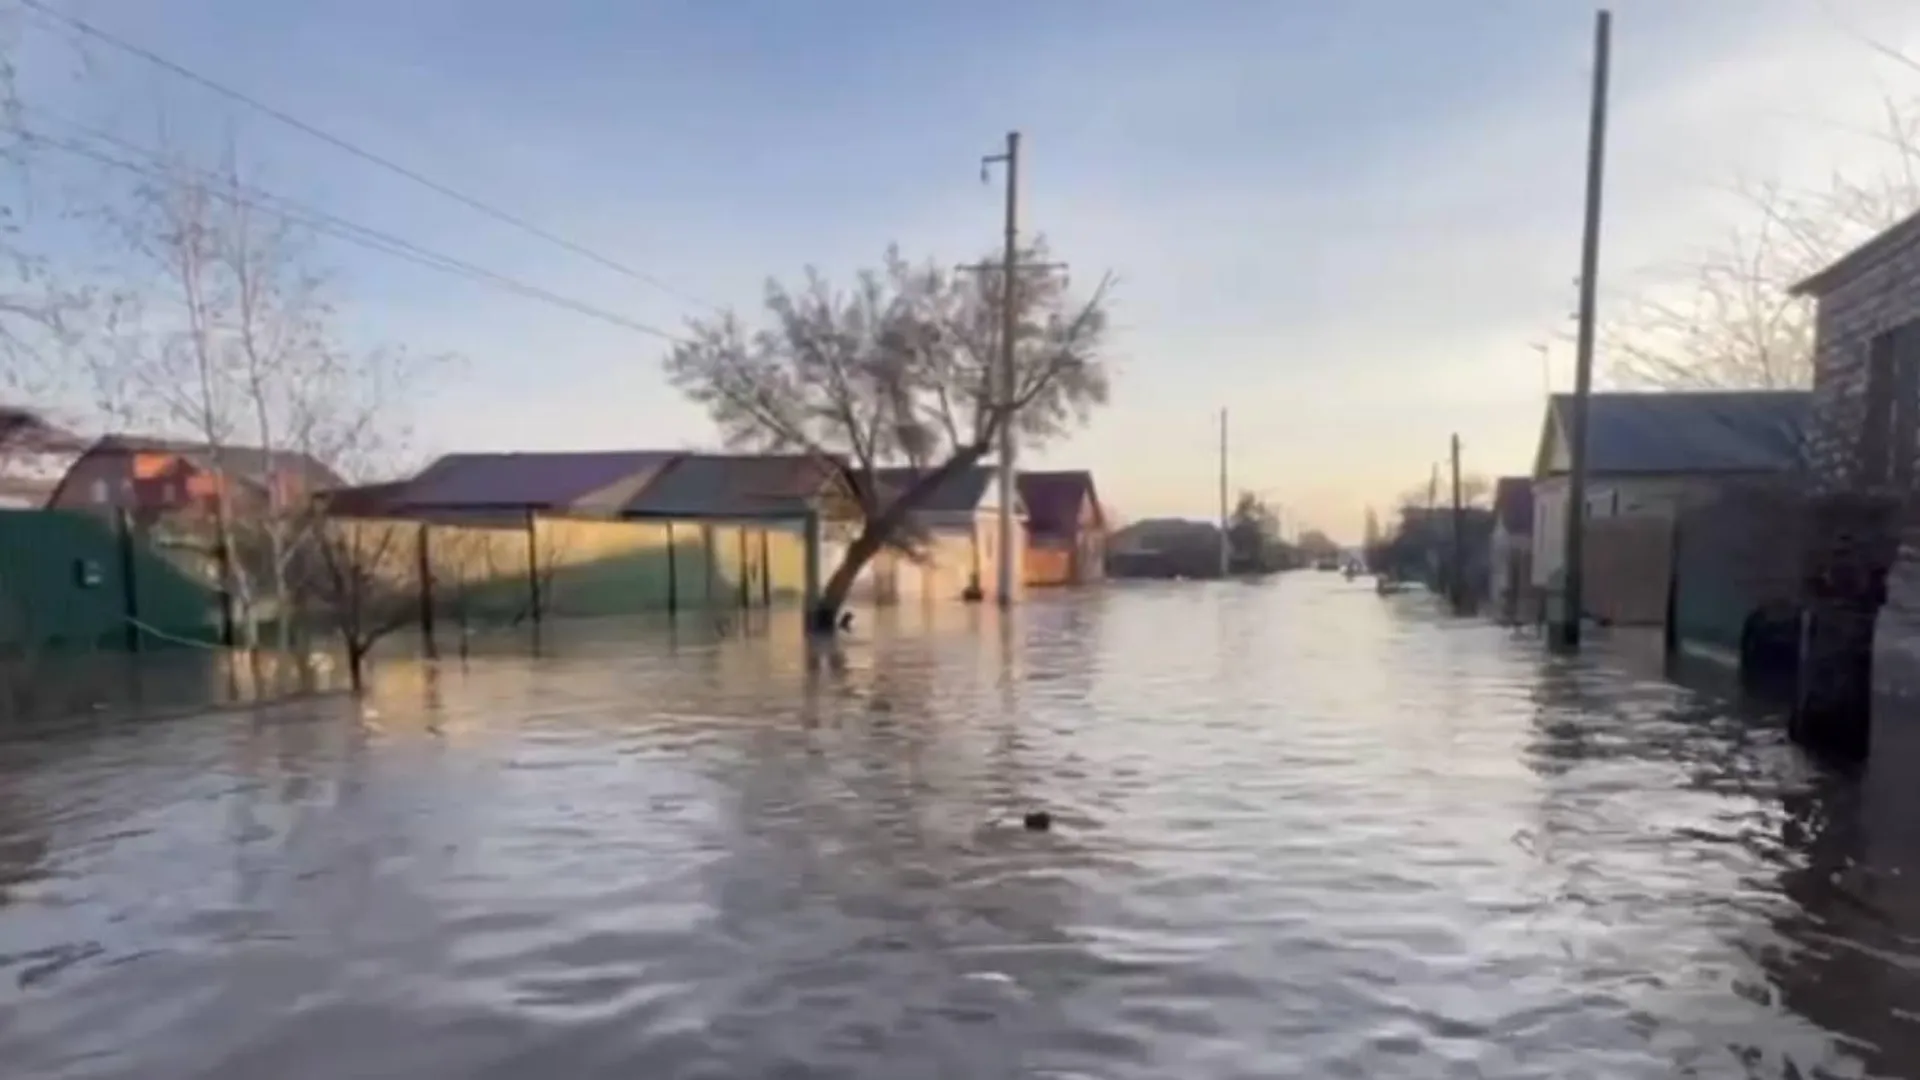 Свыше 700 граждан эвакуированы из затопленного микрорайона Старый город в Орске